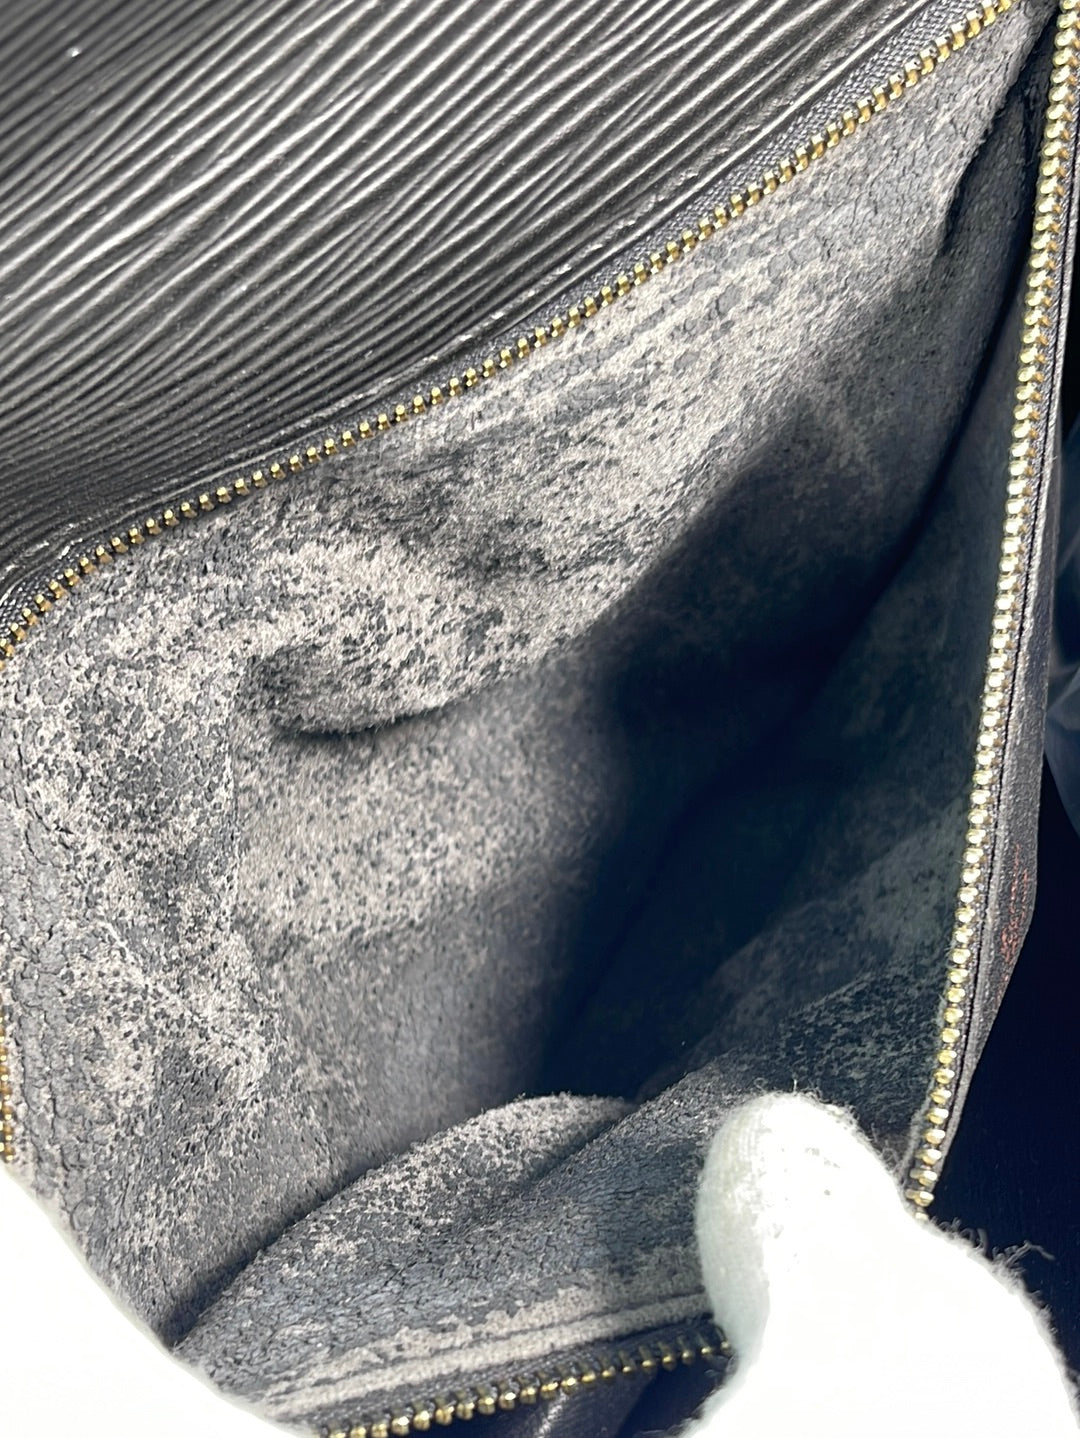 LOUIS VUITTON POCHETTE Volga clutch Business bag M55703 leather Noir Used men  LV $2,414.12 - PicClick AU